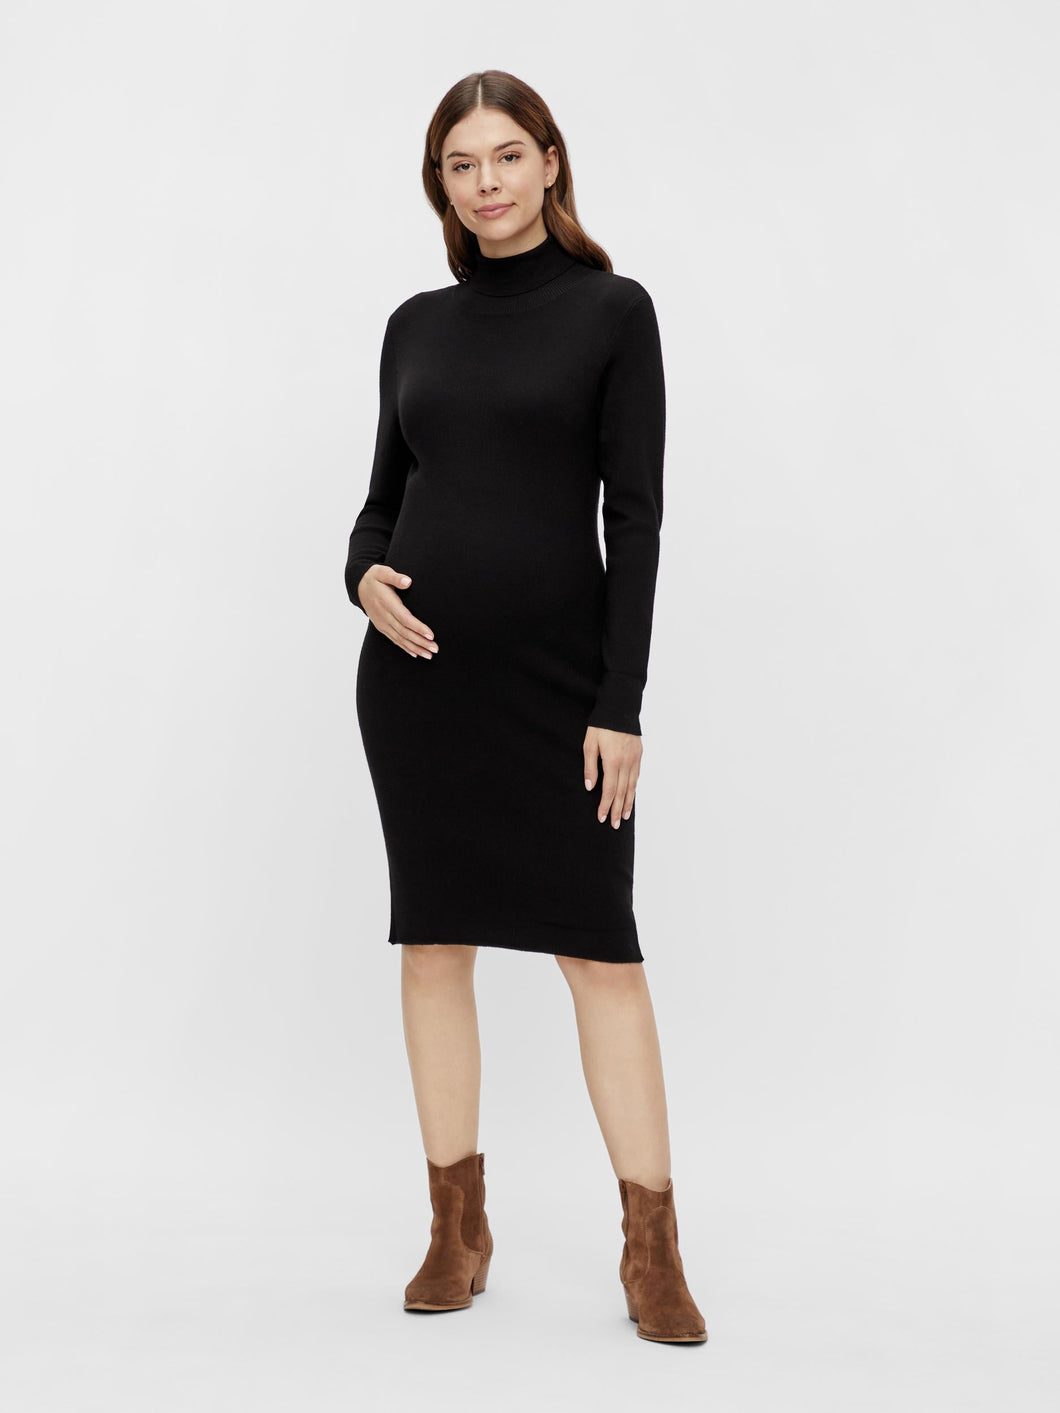 Midi Umstandskleid online kaufen oder mieten bei Mutterkleid, schwarz mit Rollkragen aus LENZING Viskose